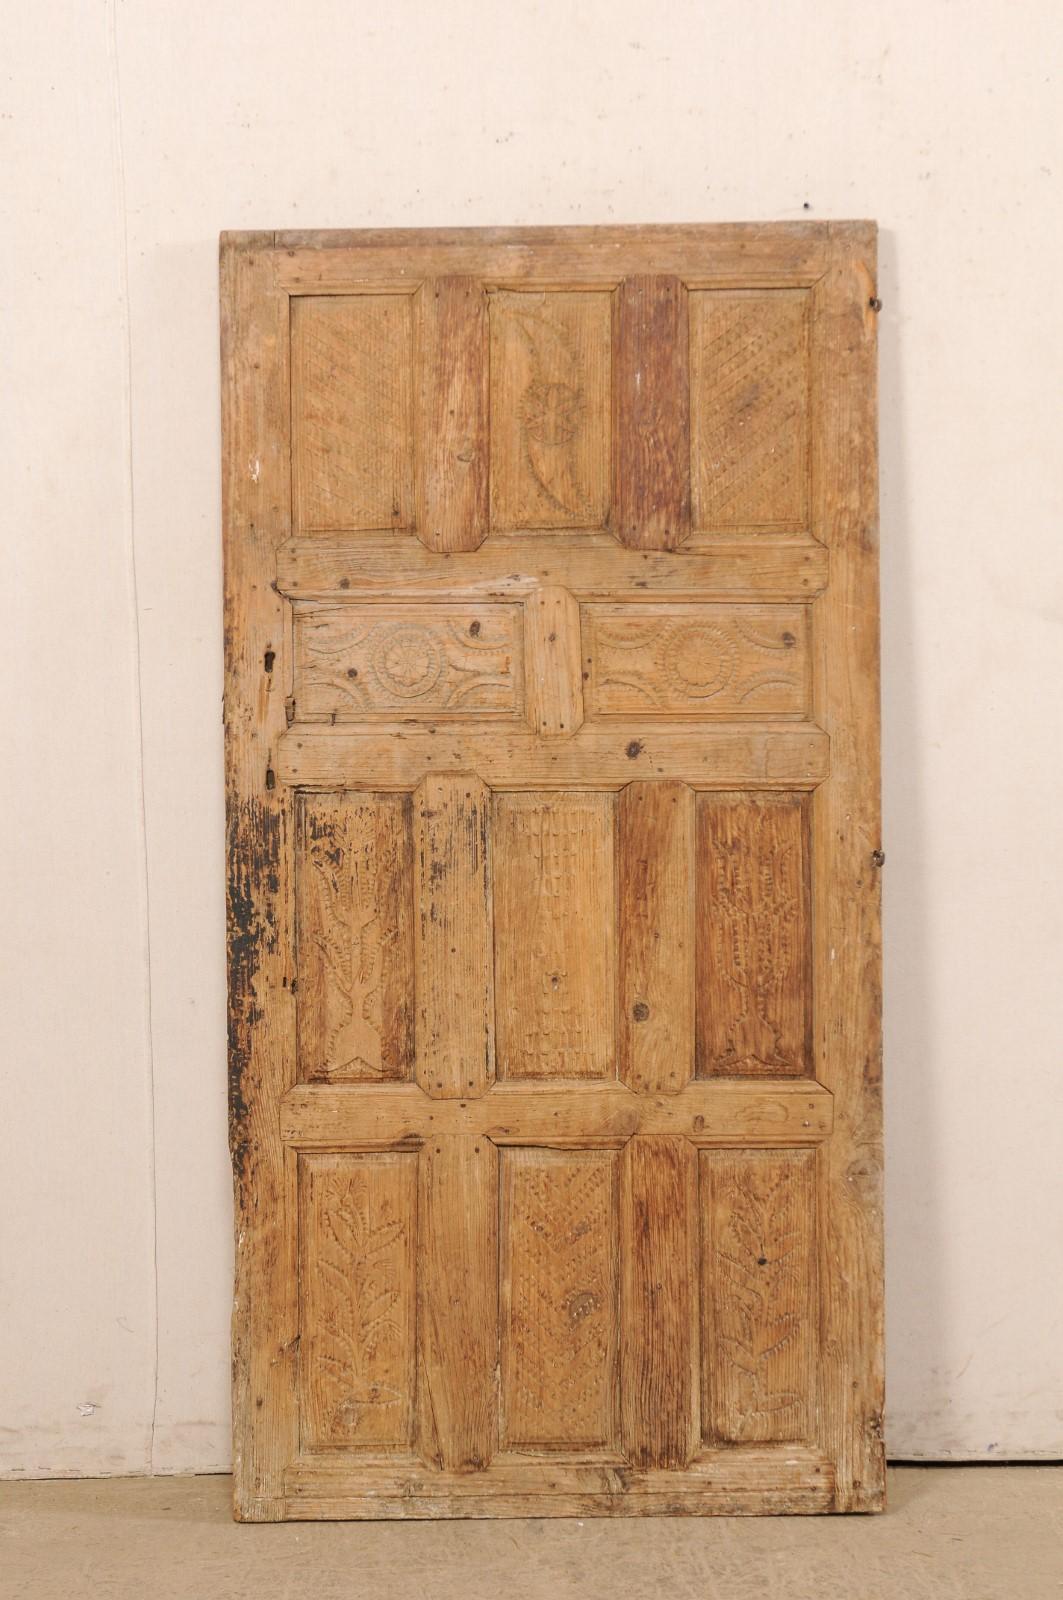 Une porte turque simple à panneaux soulevés du 19e siècle. Cette porte ancienne de Turquie présente un joli motif de 11 panneaux en relief sur sa face avant, avec des motifs sculptés à la main et crantés magnifiquement rustiques ornant chacun des